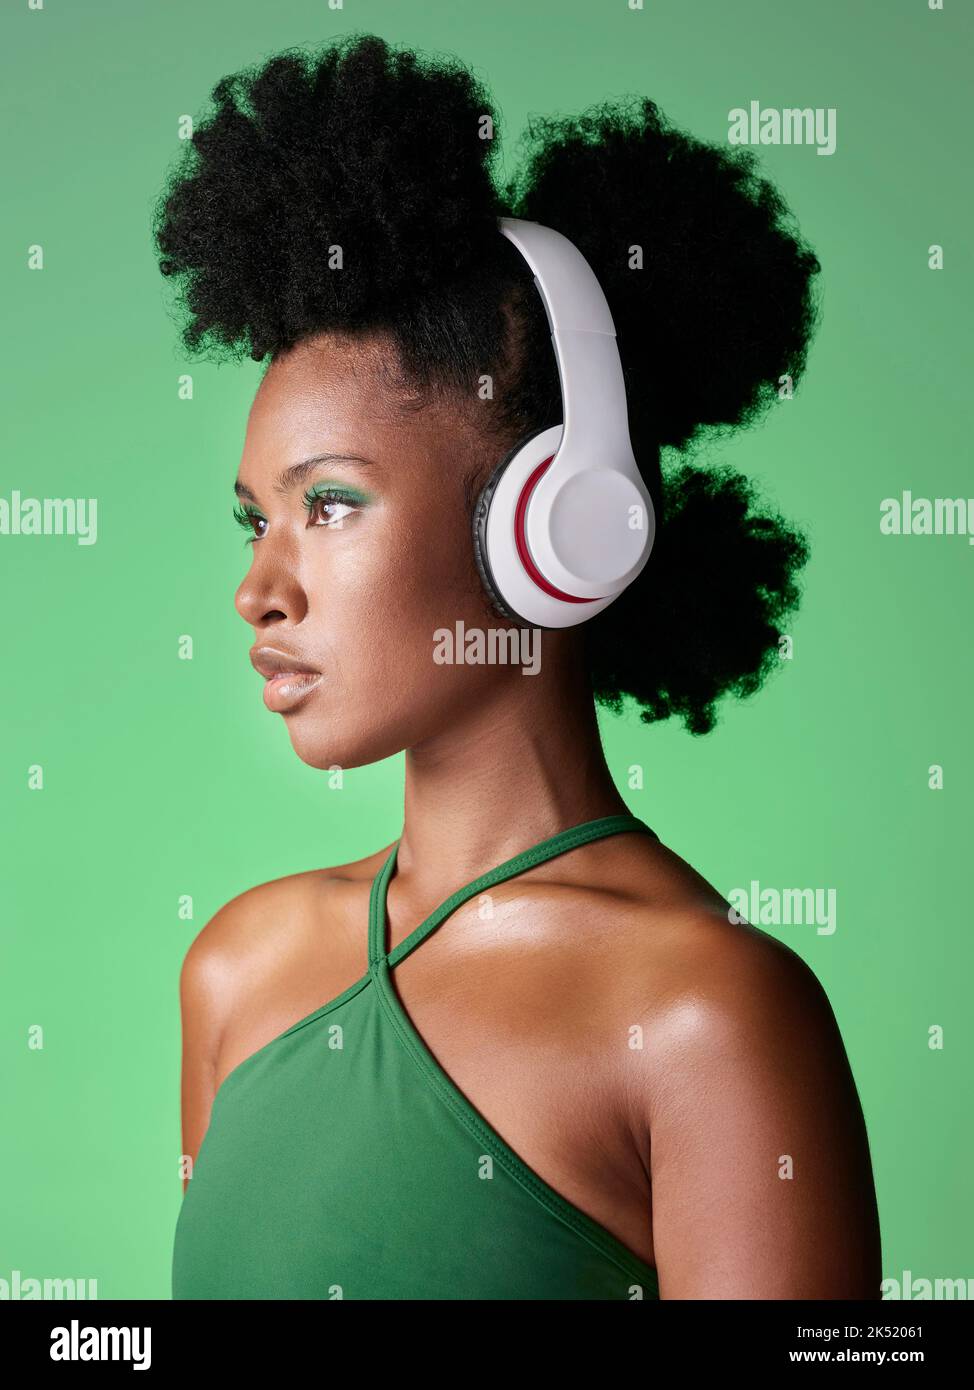 Femme noire avec casque à l'écoute de musique ou podcast sur fond vert studio maquette publicitaire et marketing. Fille africaine de gen z avec audio Banque D'Images